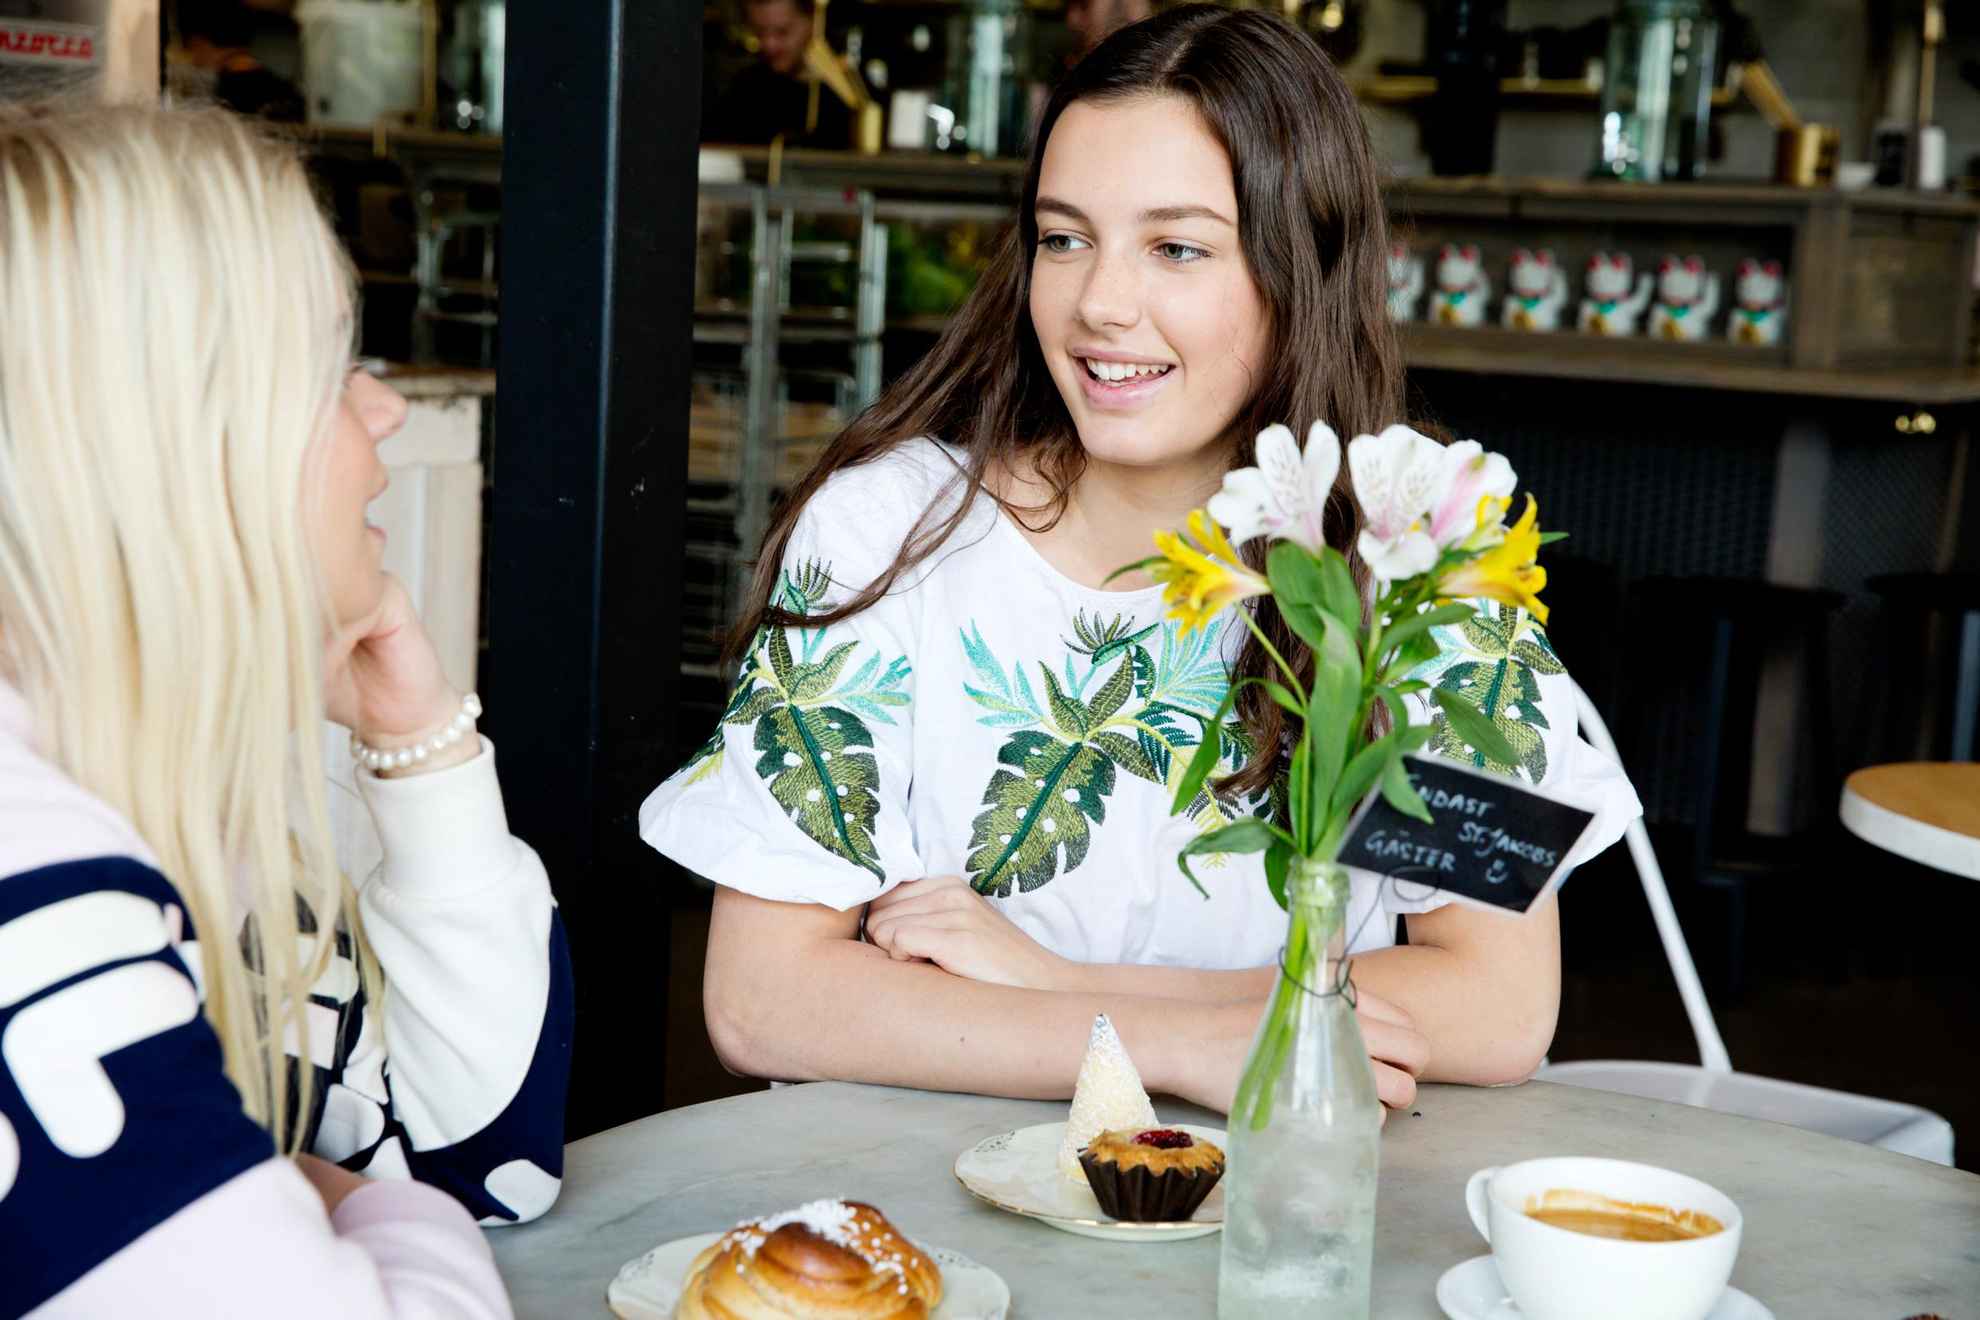 Zwei Frauen unterhalten sich und trinken dabei Kaffee und essen Fika Gebäck, wie eine Zimtschnecke und Muffins.